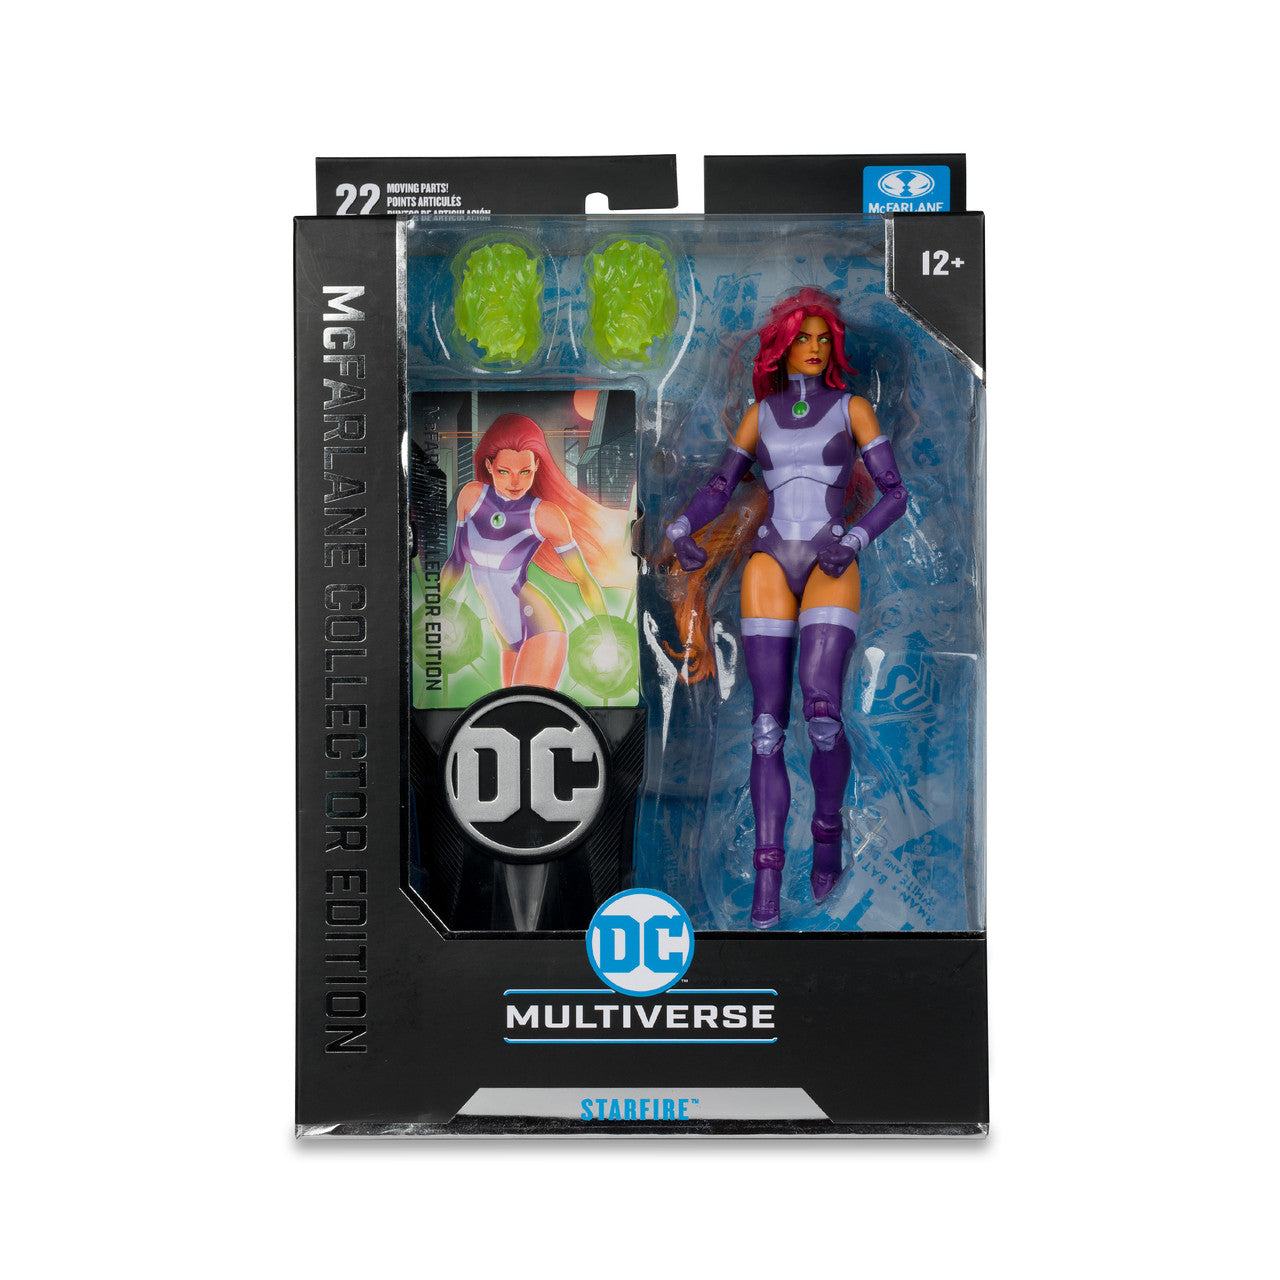 Starfire (DC Rebirth) McFarlane Collector Edition Figure